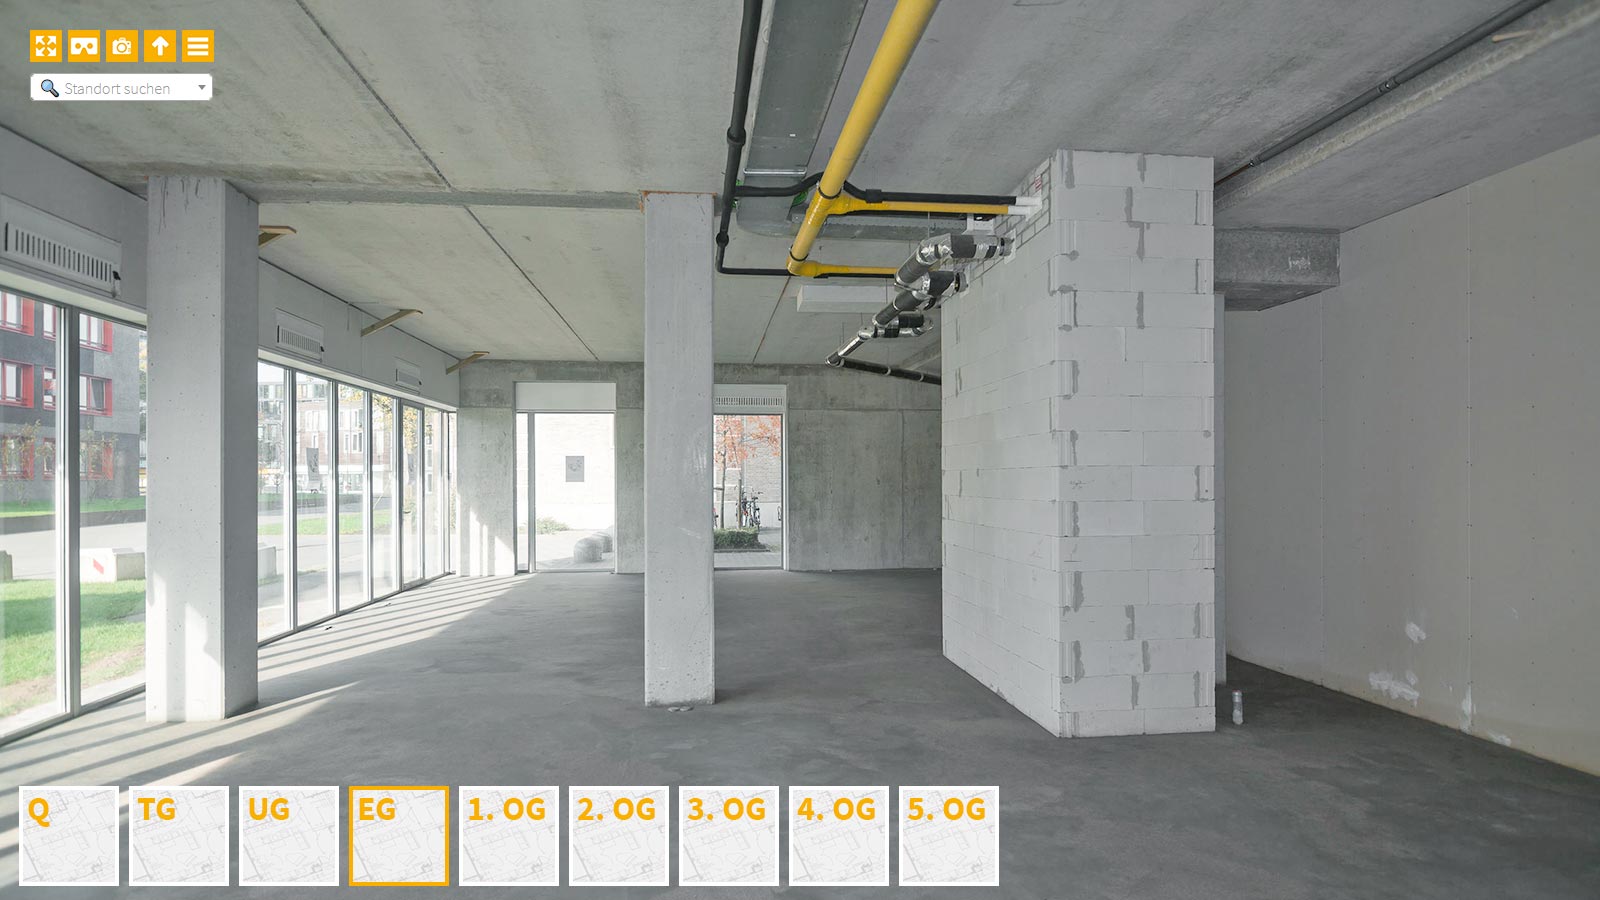 Baudokumentation 360 Grad bei gestörten Projekten in 


	


	


	


	


	


	


	


	


	


	Karlsruhe









, Bilddokumentation als virtueller Rundgang